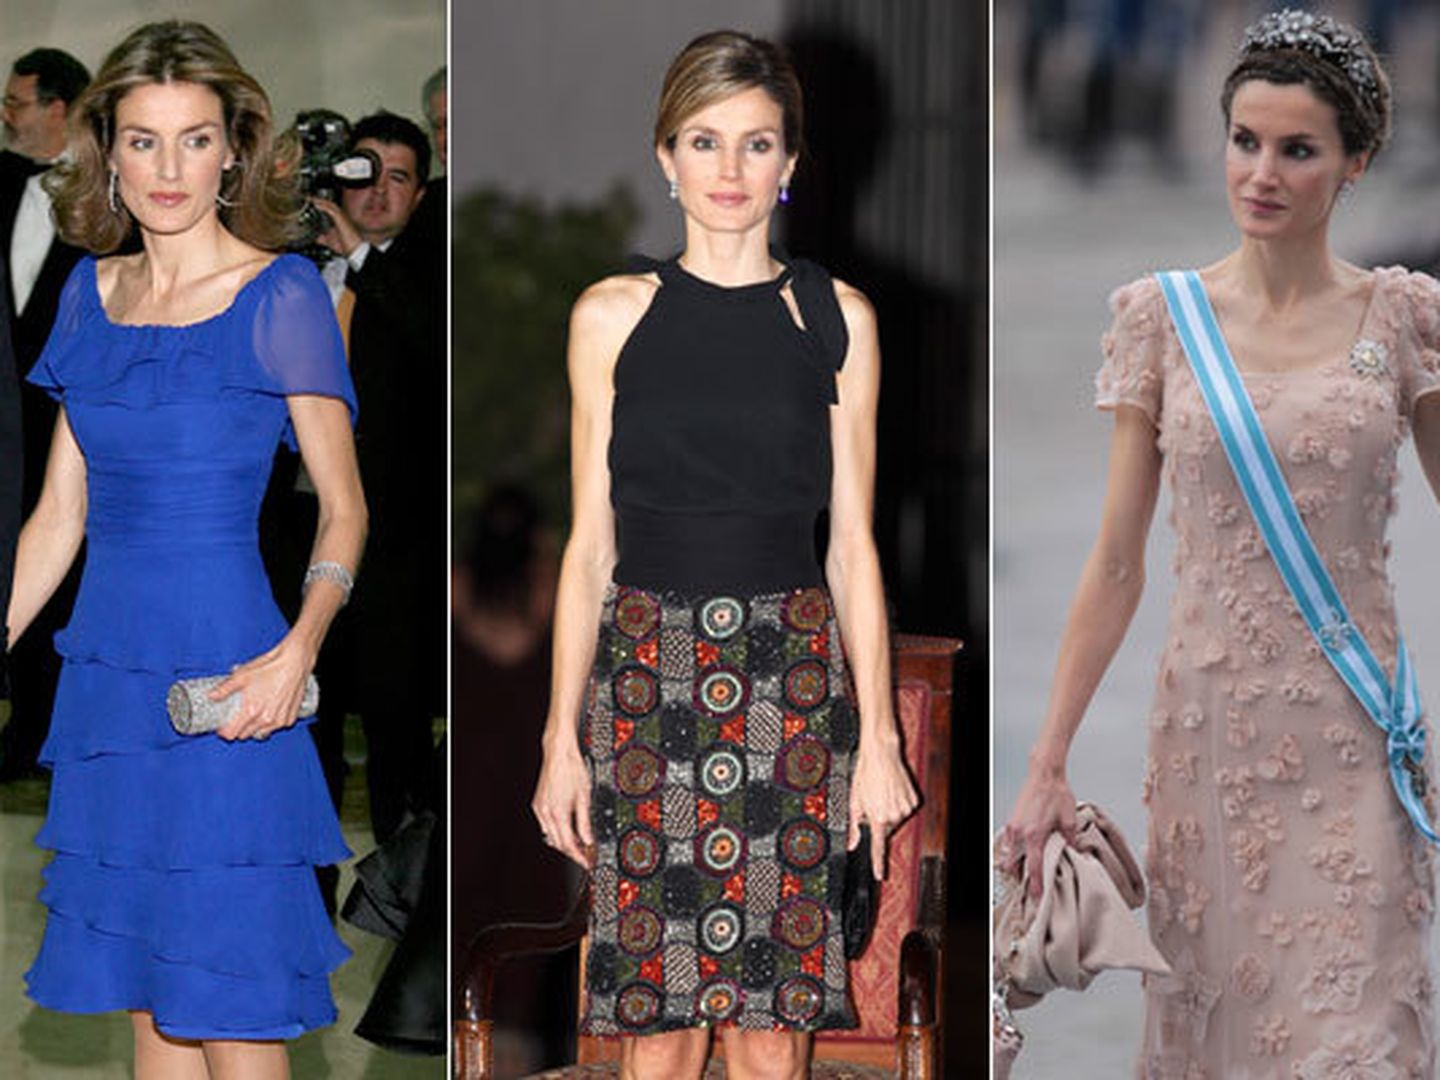 La Princesa de Asturias. De izquierda a derecha, en la entrega de premios Mariano de Cavia en 2008, en un viaje a Chile en 2011 y en la boda de Victoria de Suecia con Daniel Westling en 2010 